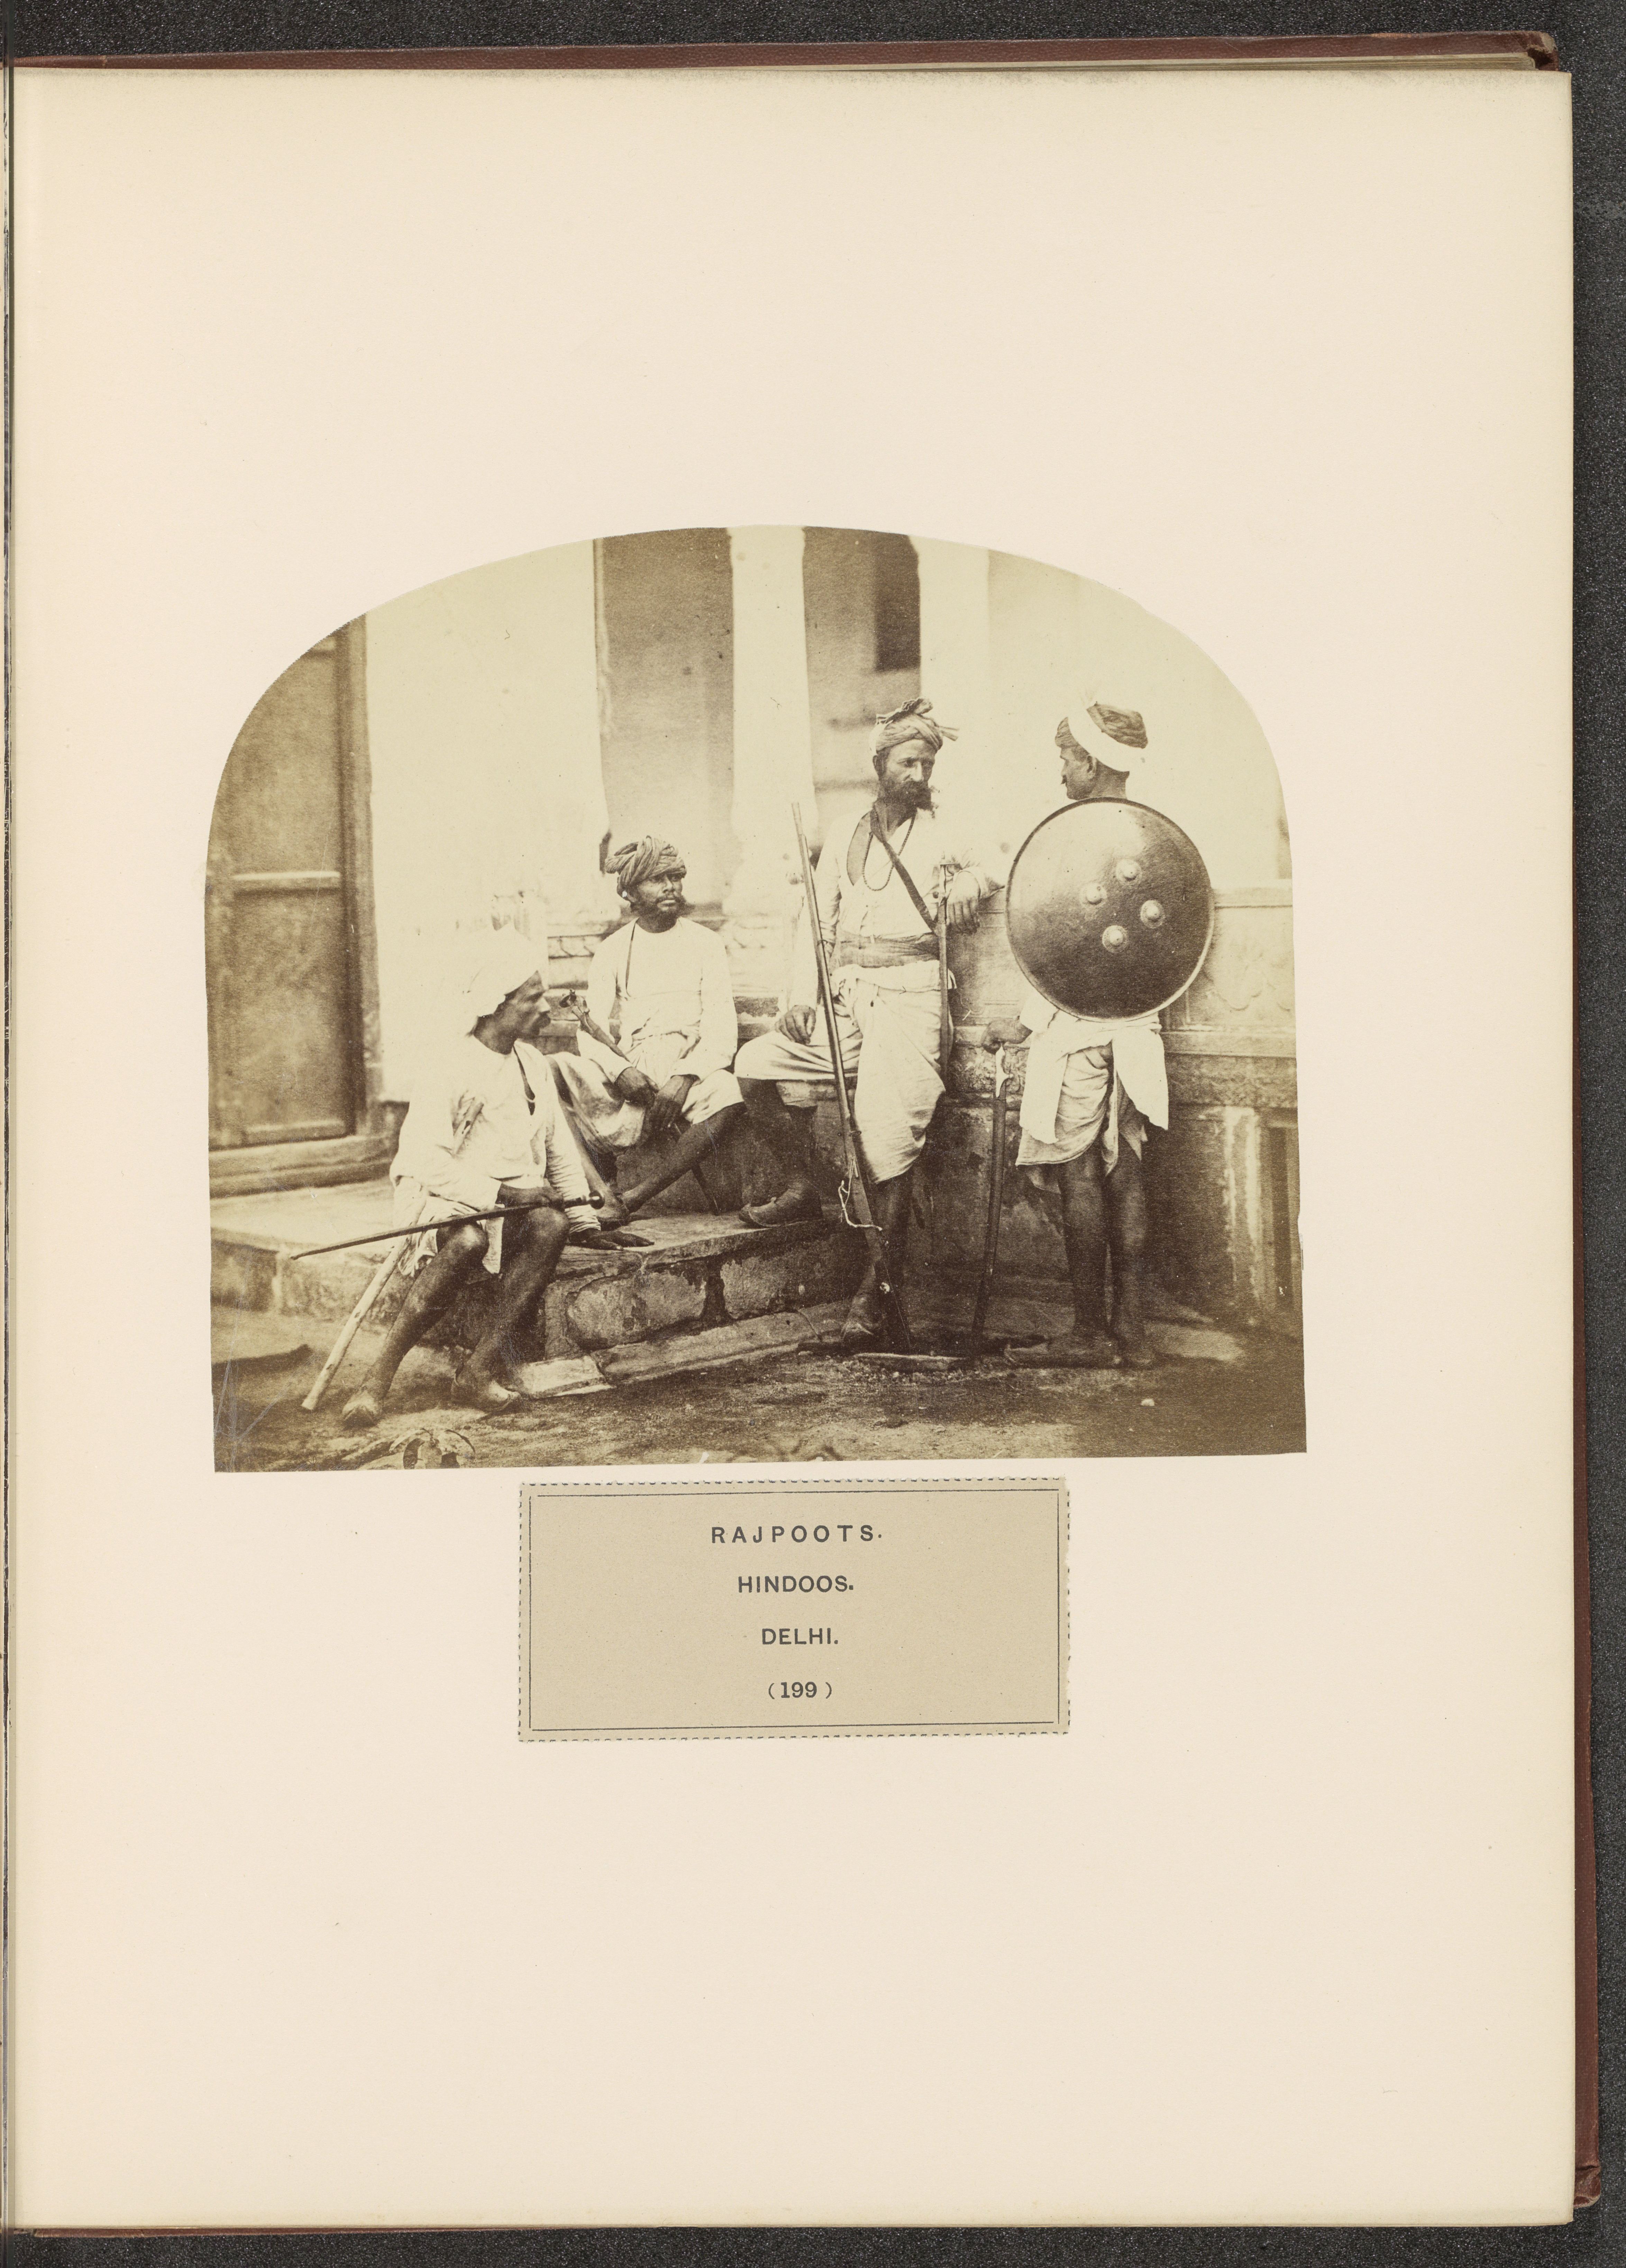 Rajput-warriors-Dehli-British-Empire.jpg